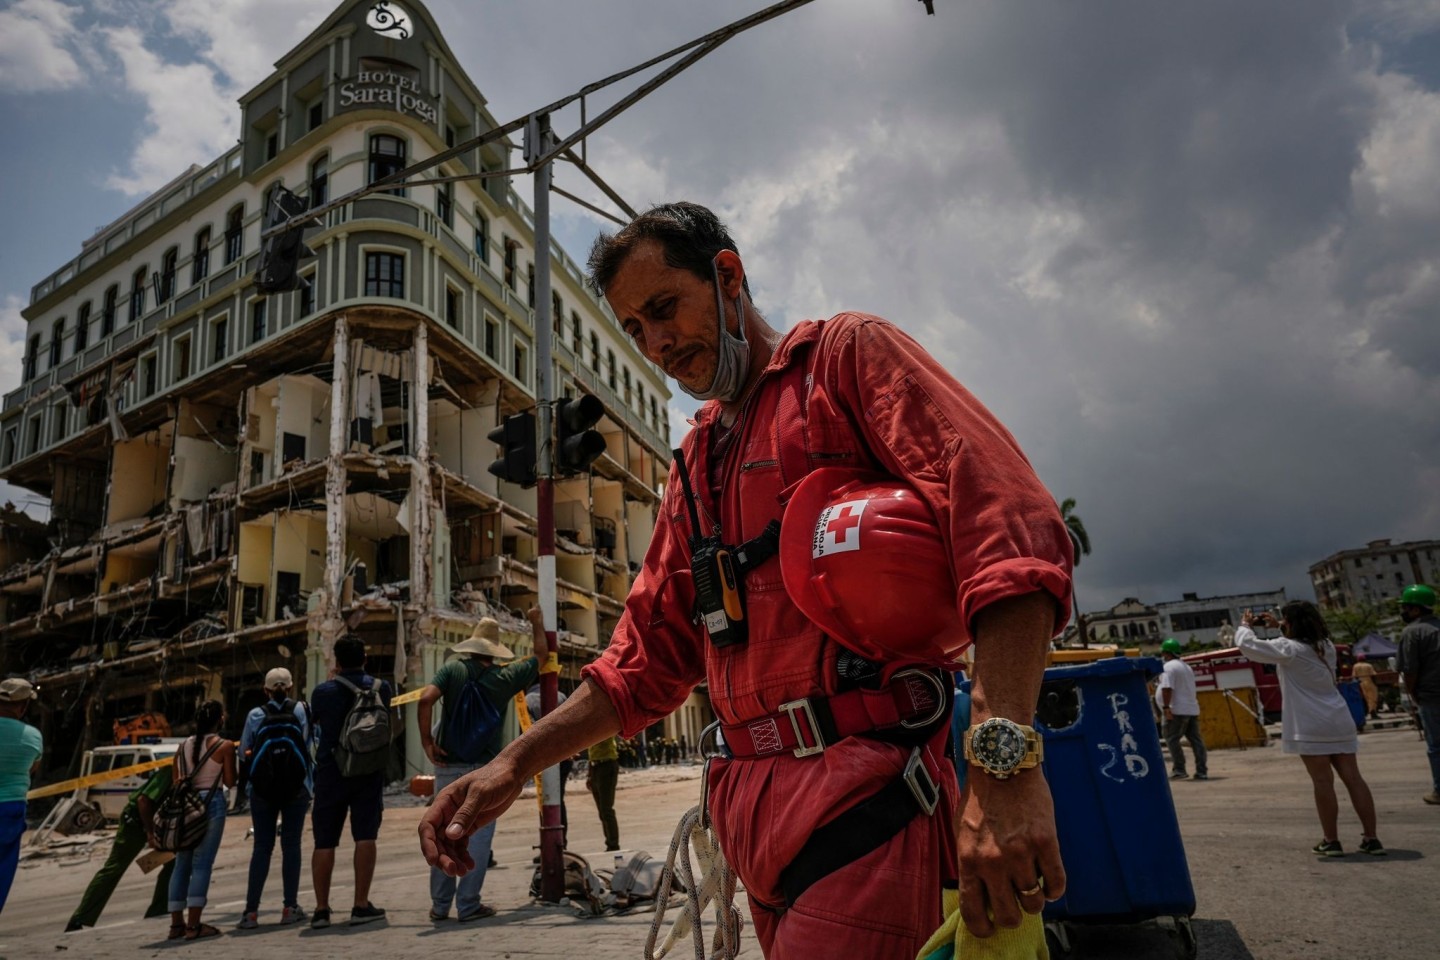 Am Freitag hatte eine starke Explosion das Hotel Saratoga in Havannas Altstadt großteils zerstört.